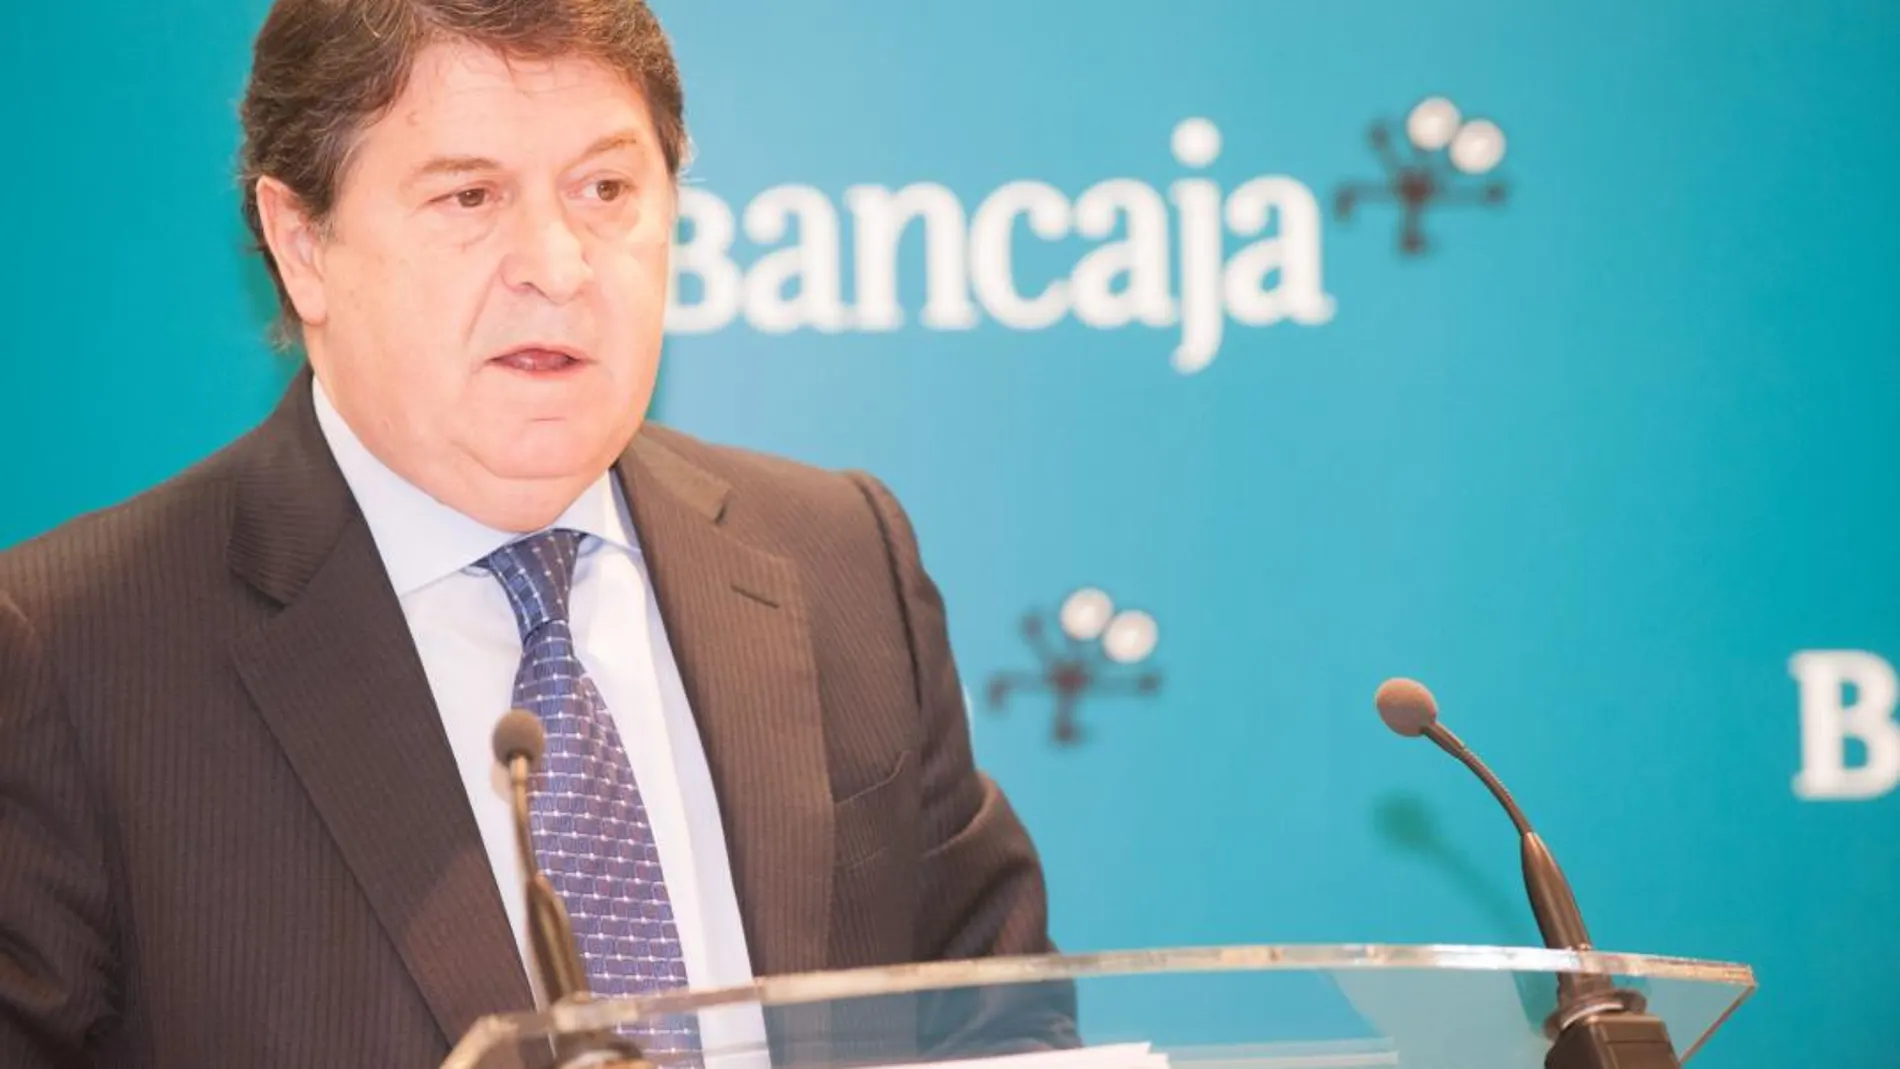 El expresidente de Bancaja, José Luis Olivas, considera que las operaciones crediticias con Gran Coral estaban respaldadas por informes técnicos y avaladas por el capital inmobiliario del grupo. (LA RAZÓN)